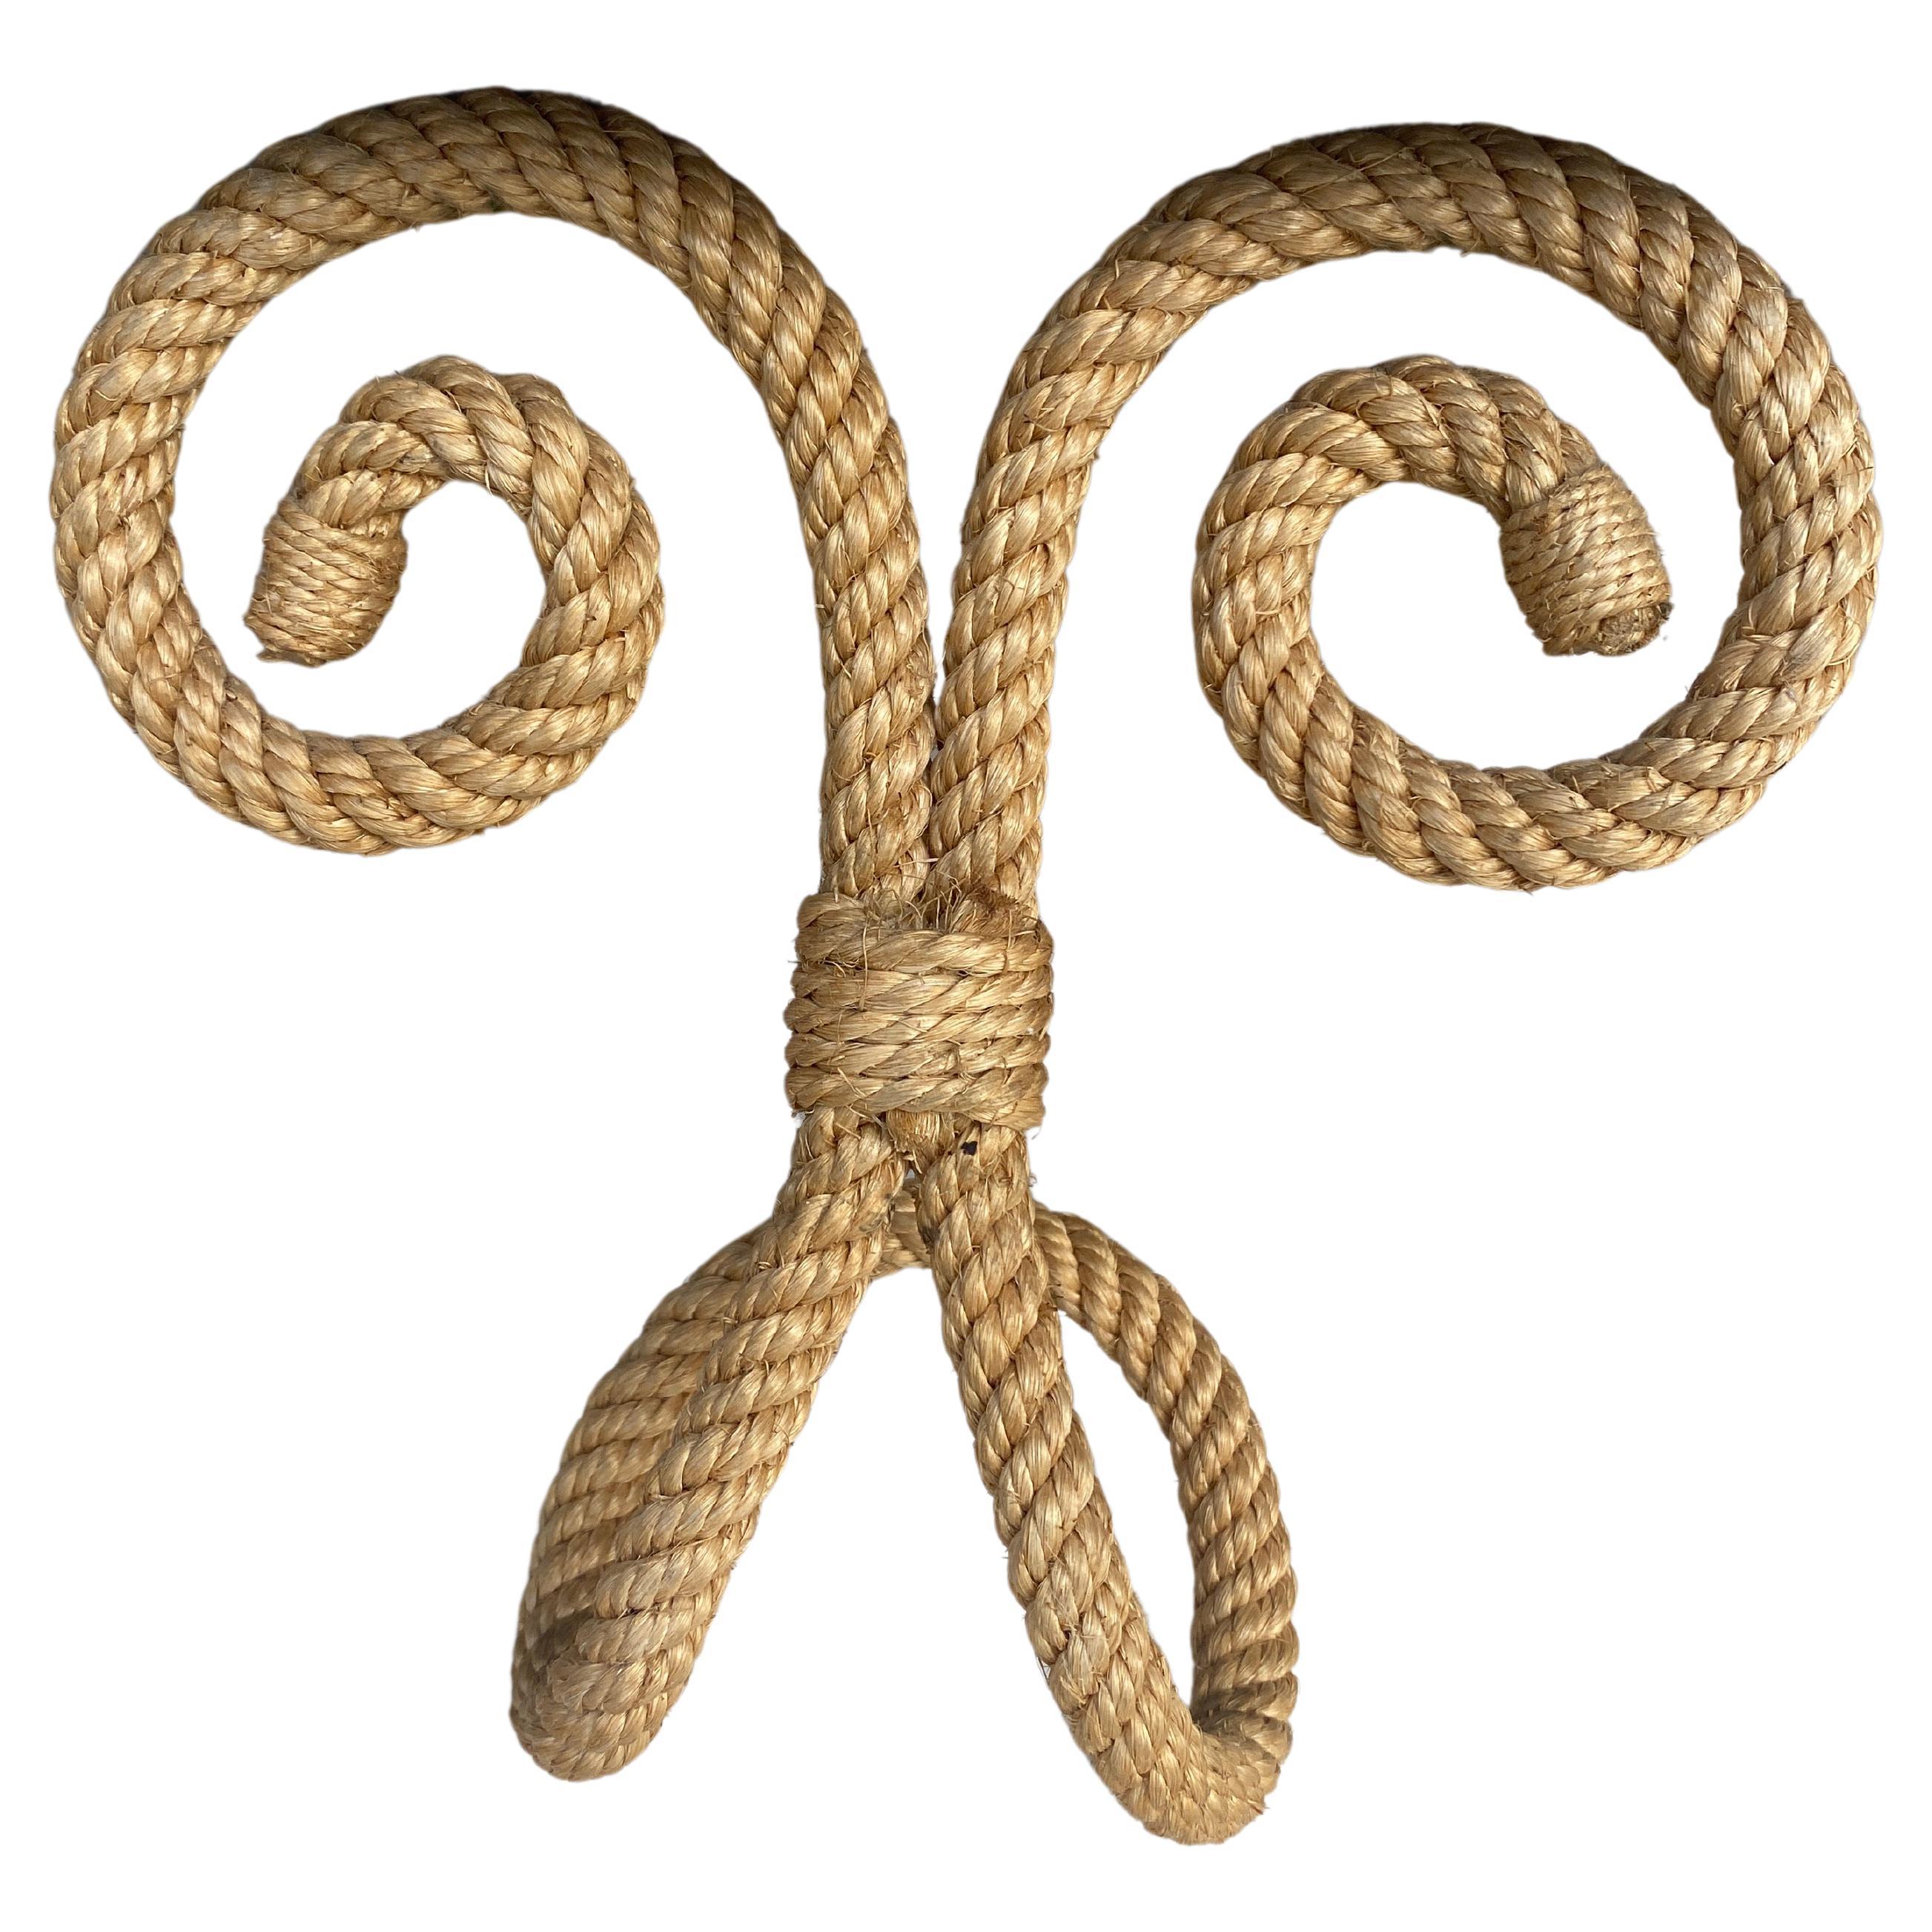 Manteau français à crochets de corde Audoux Minet, vers 1960.
Mesures : Hauteur 8 pouces, longueur 8 pouces.